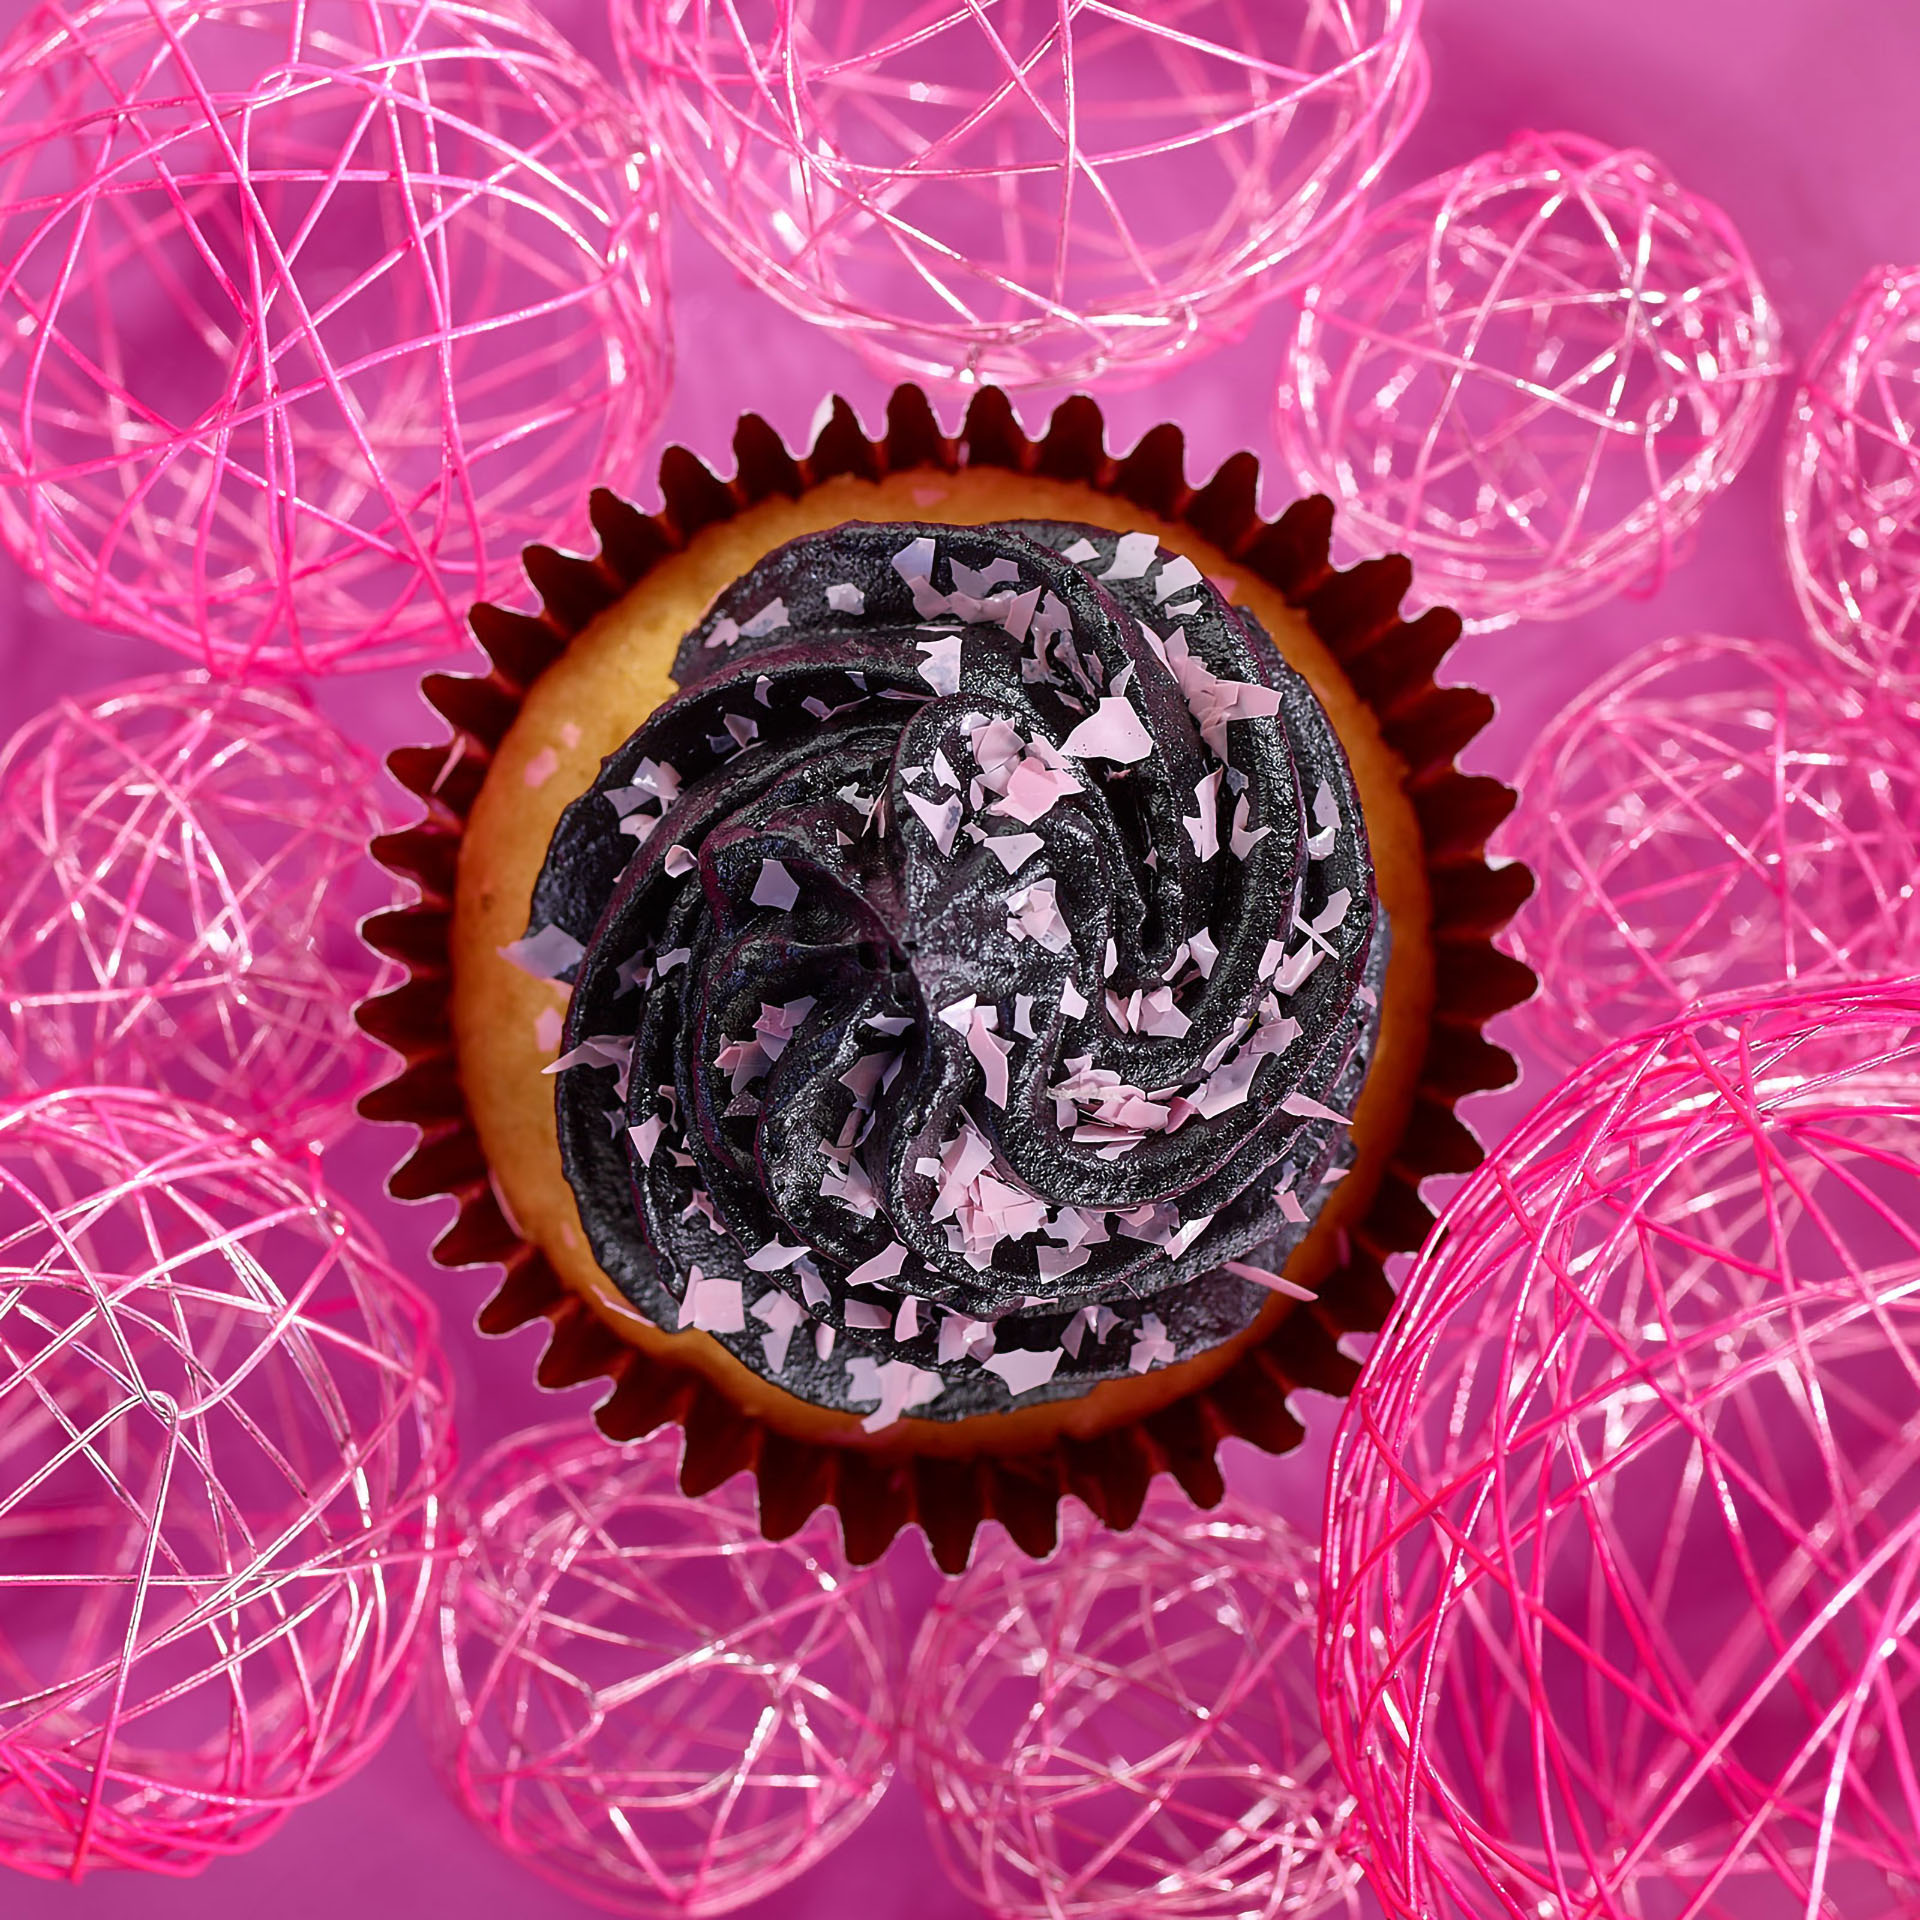 Fotodesign-matthias-schütz-muffin-shredder-pink